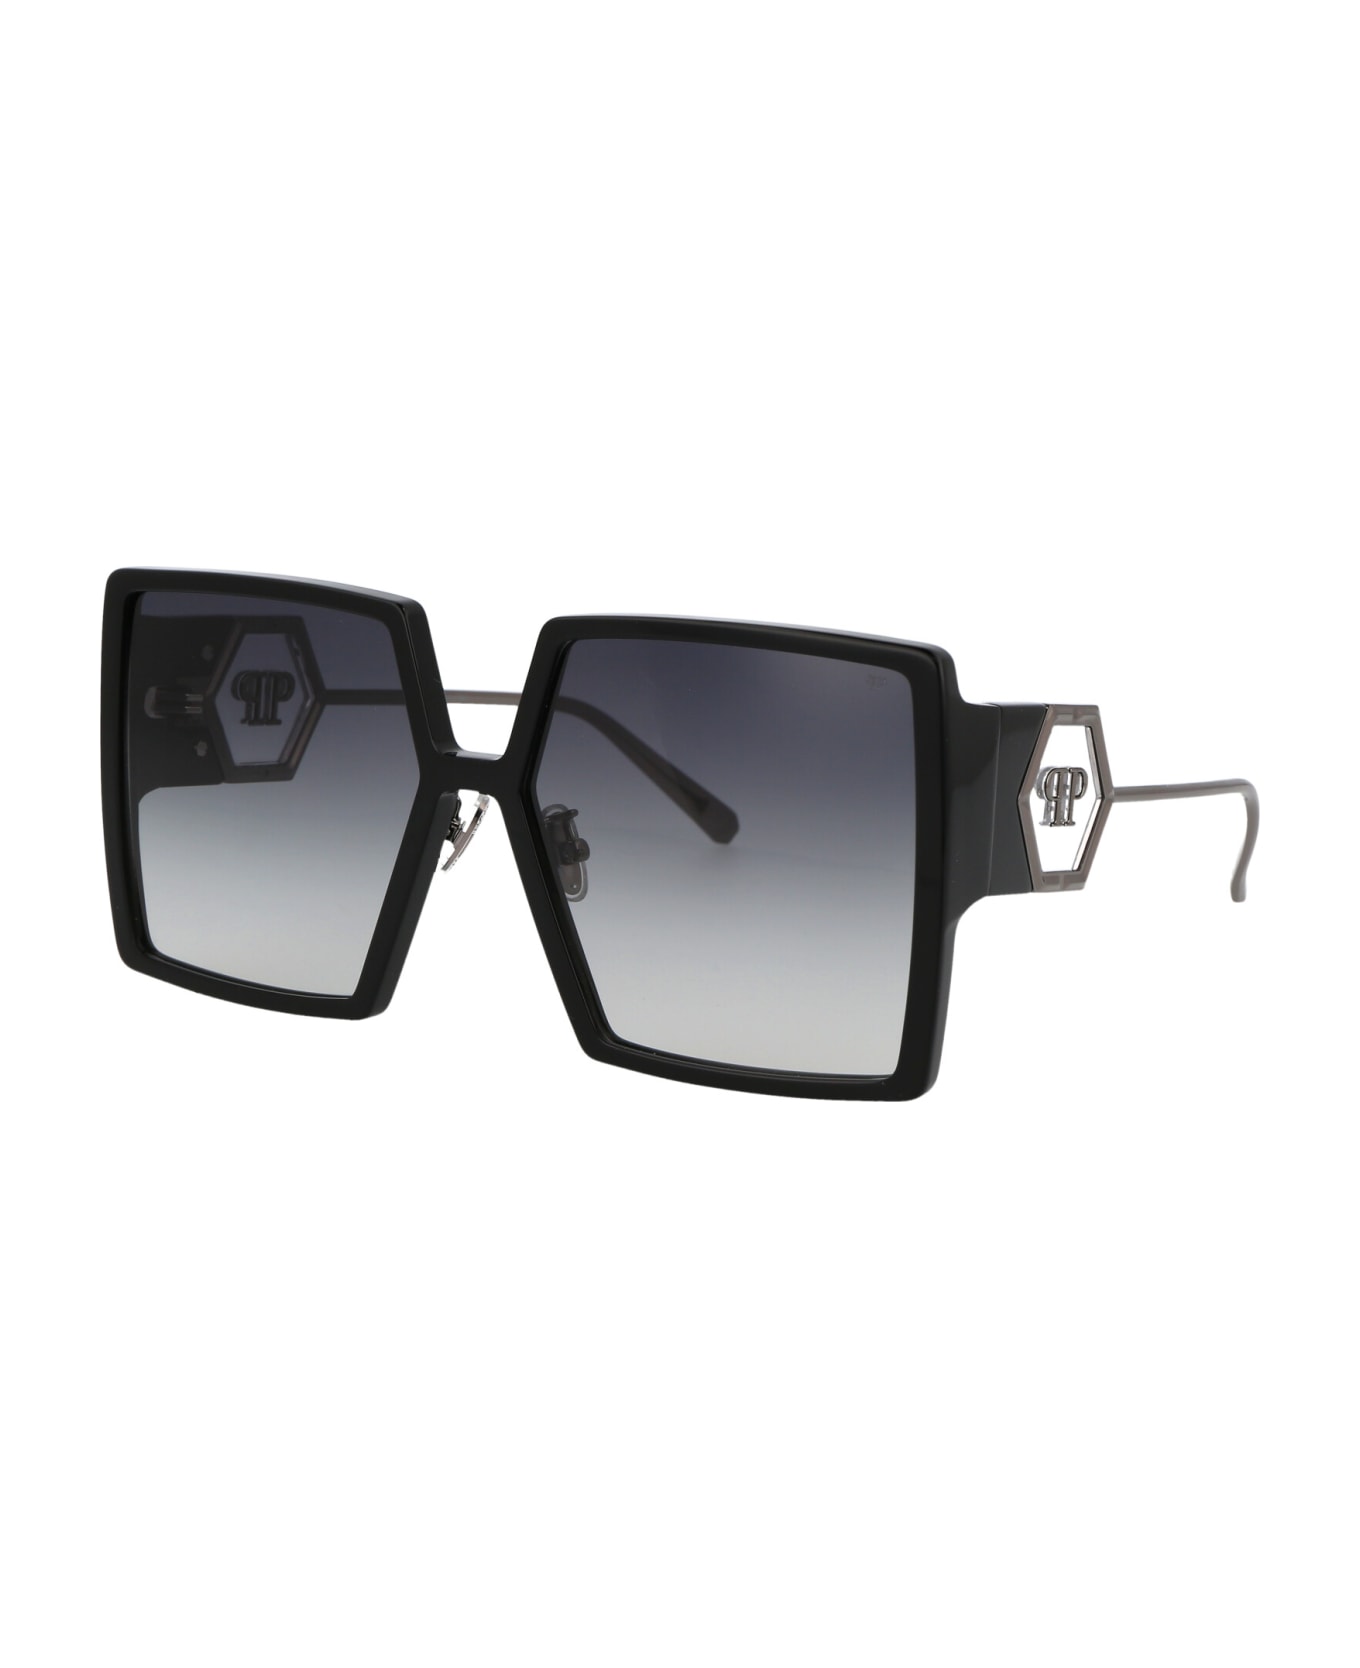 Philipp Plein Spp028m Sunglasses - 0700 BLACK